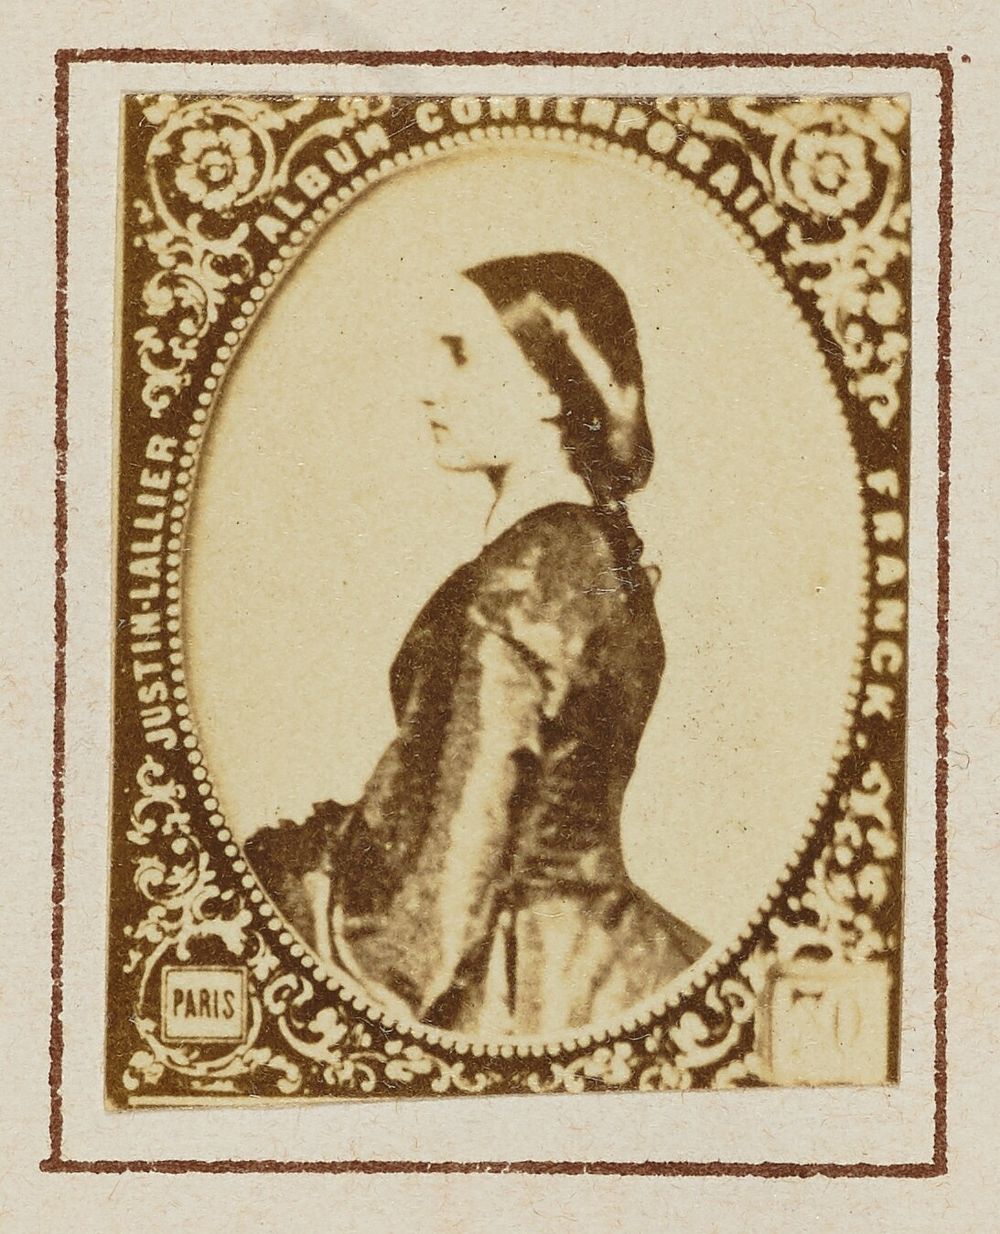 Carlota of Mexico by Franck François Marie Louis Alexandre Gobinet de Villecholles and Justin Lallier